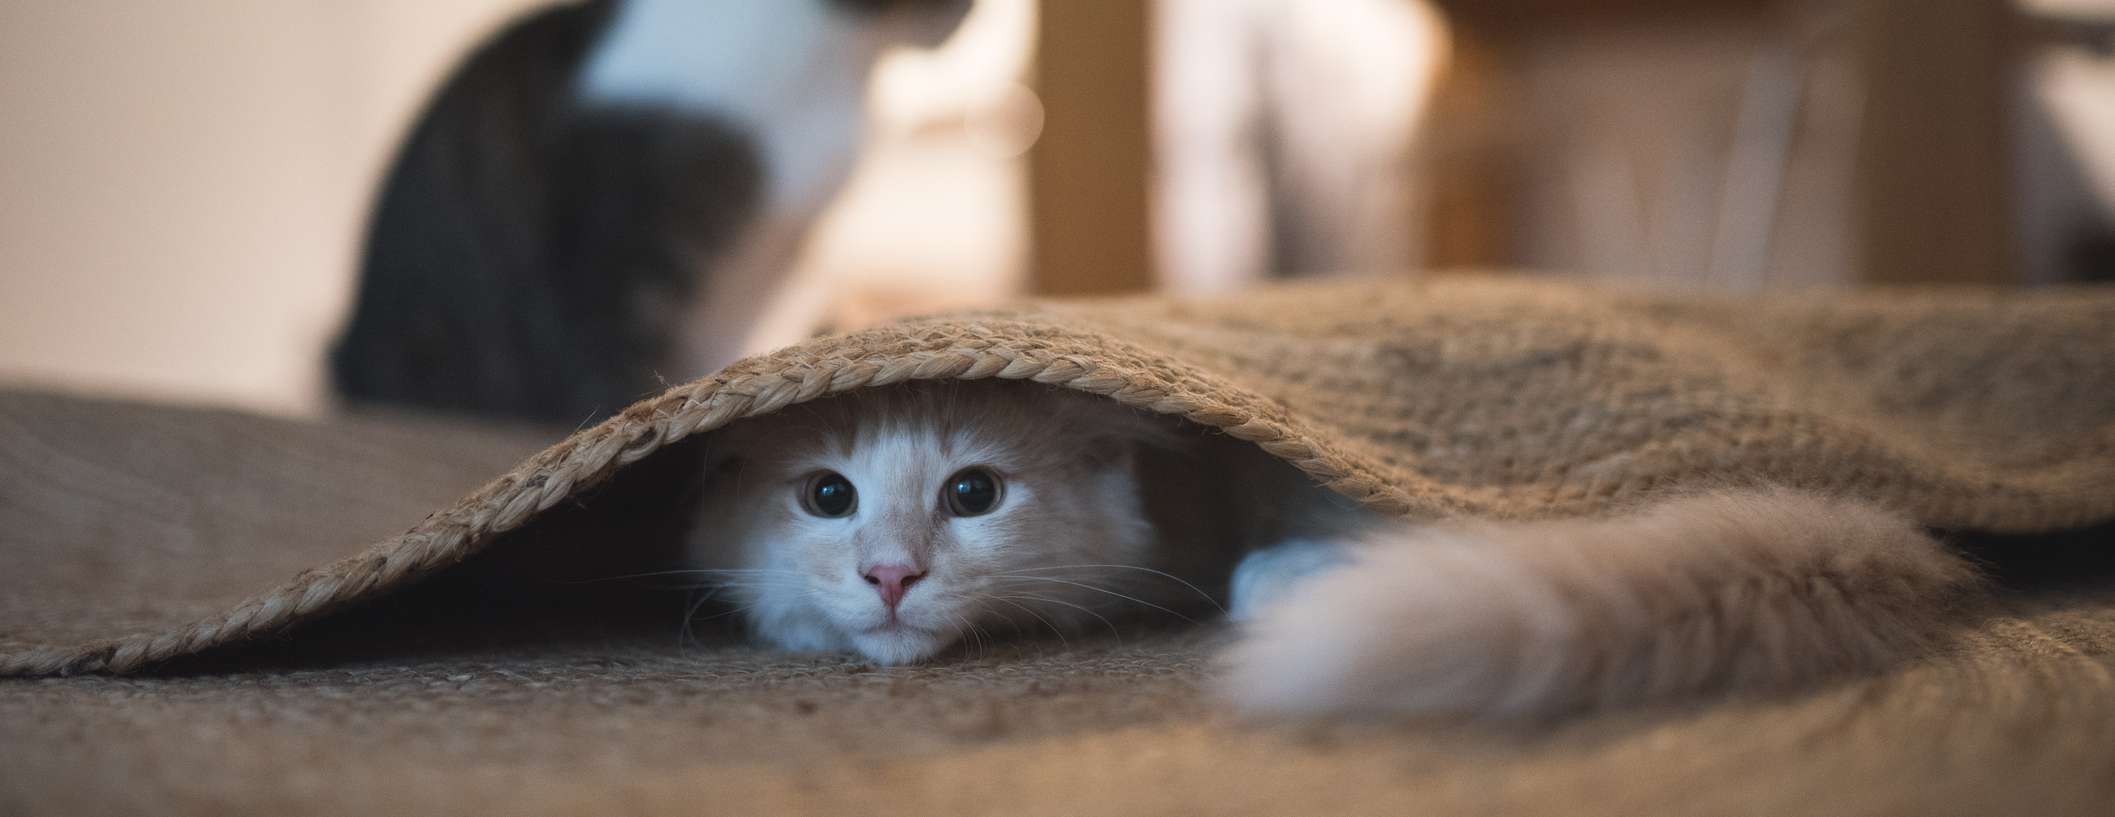 Allianz - Katzenversicherung - Katze vermisst: Rote Katze unter Teppich